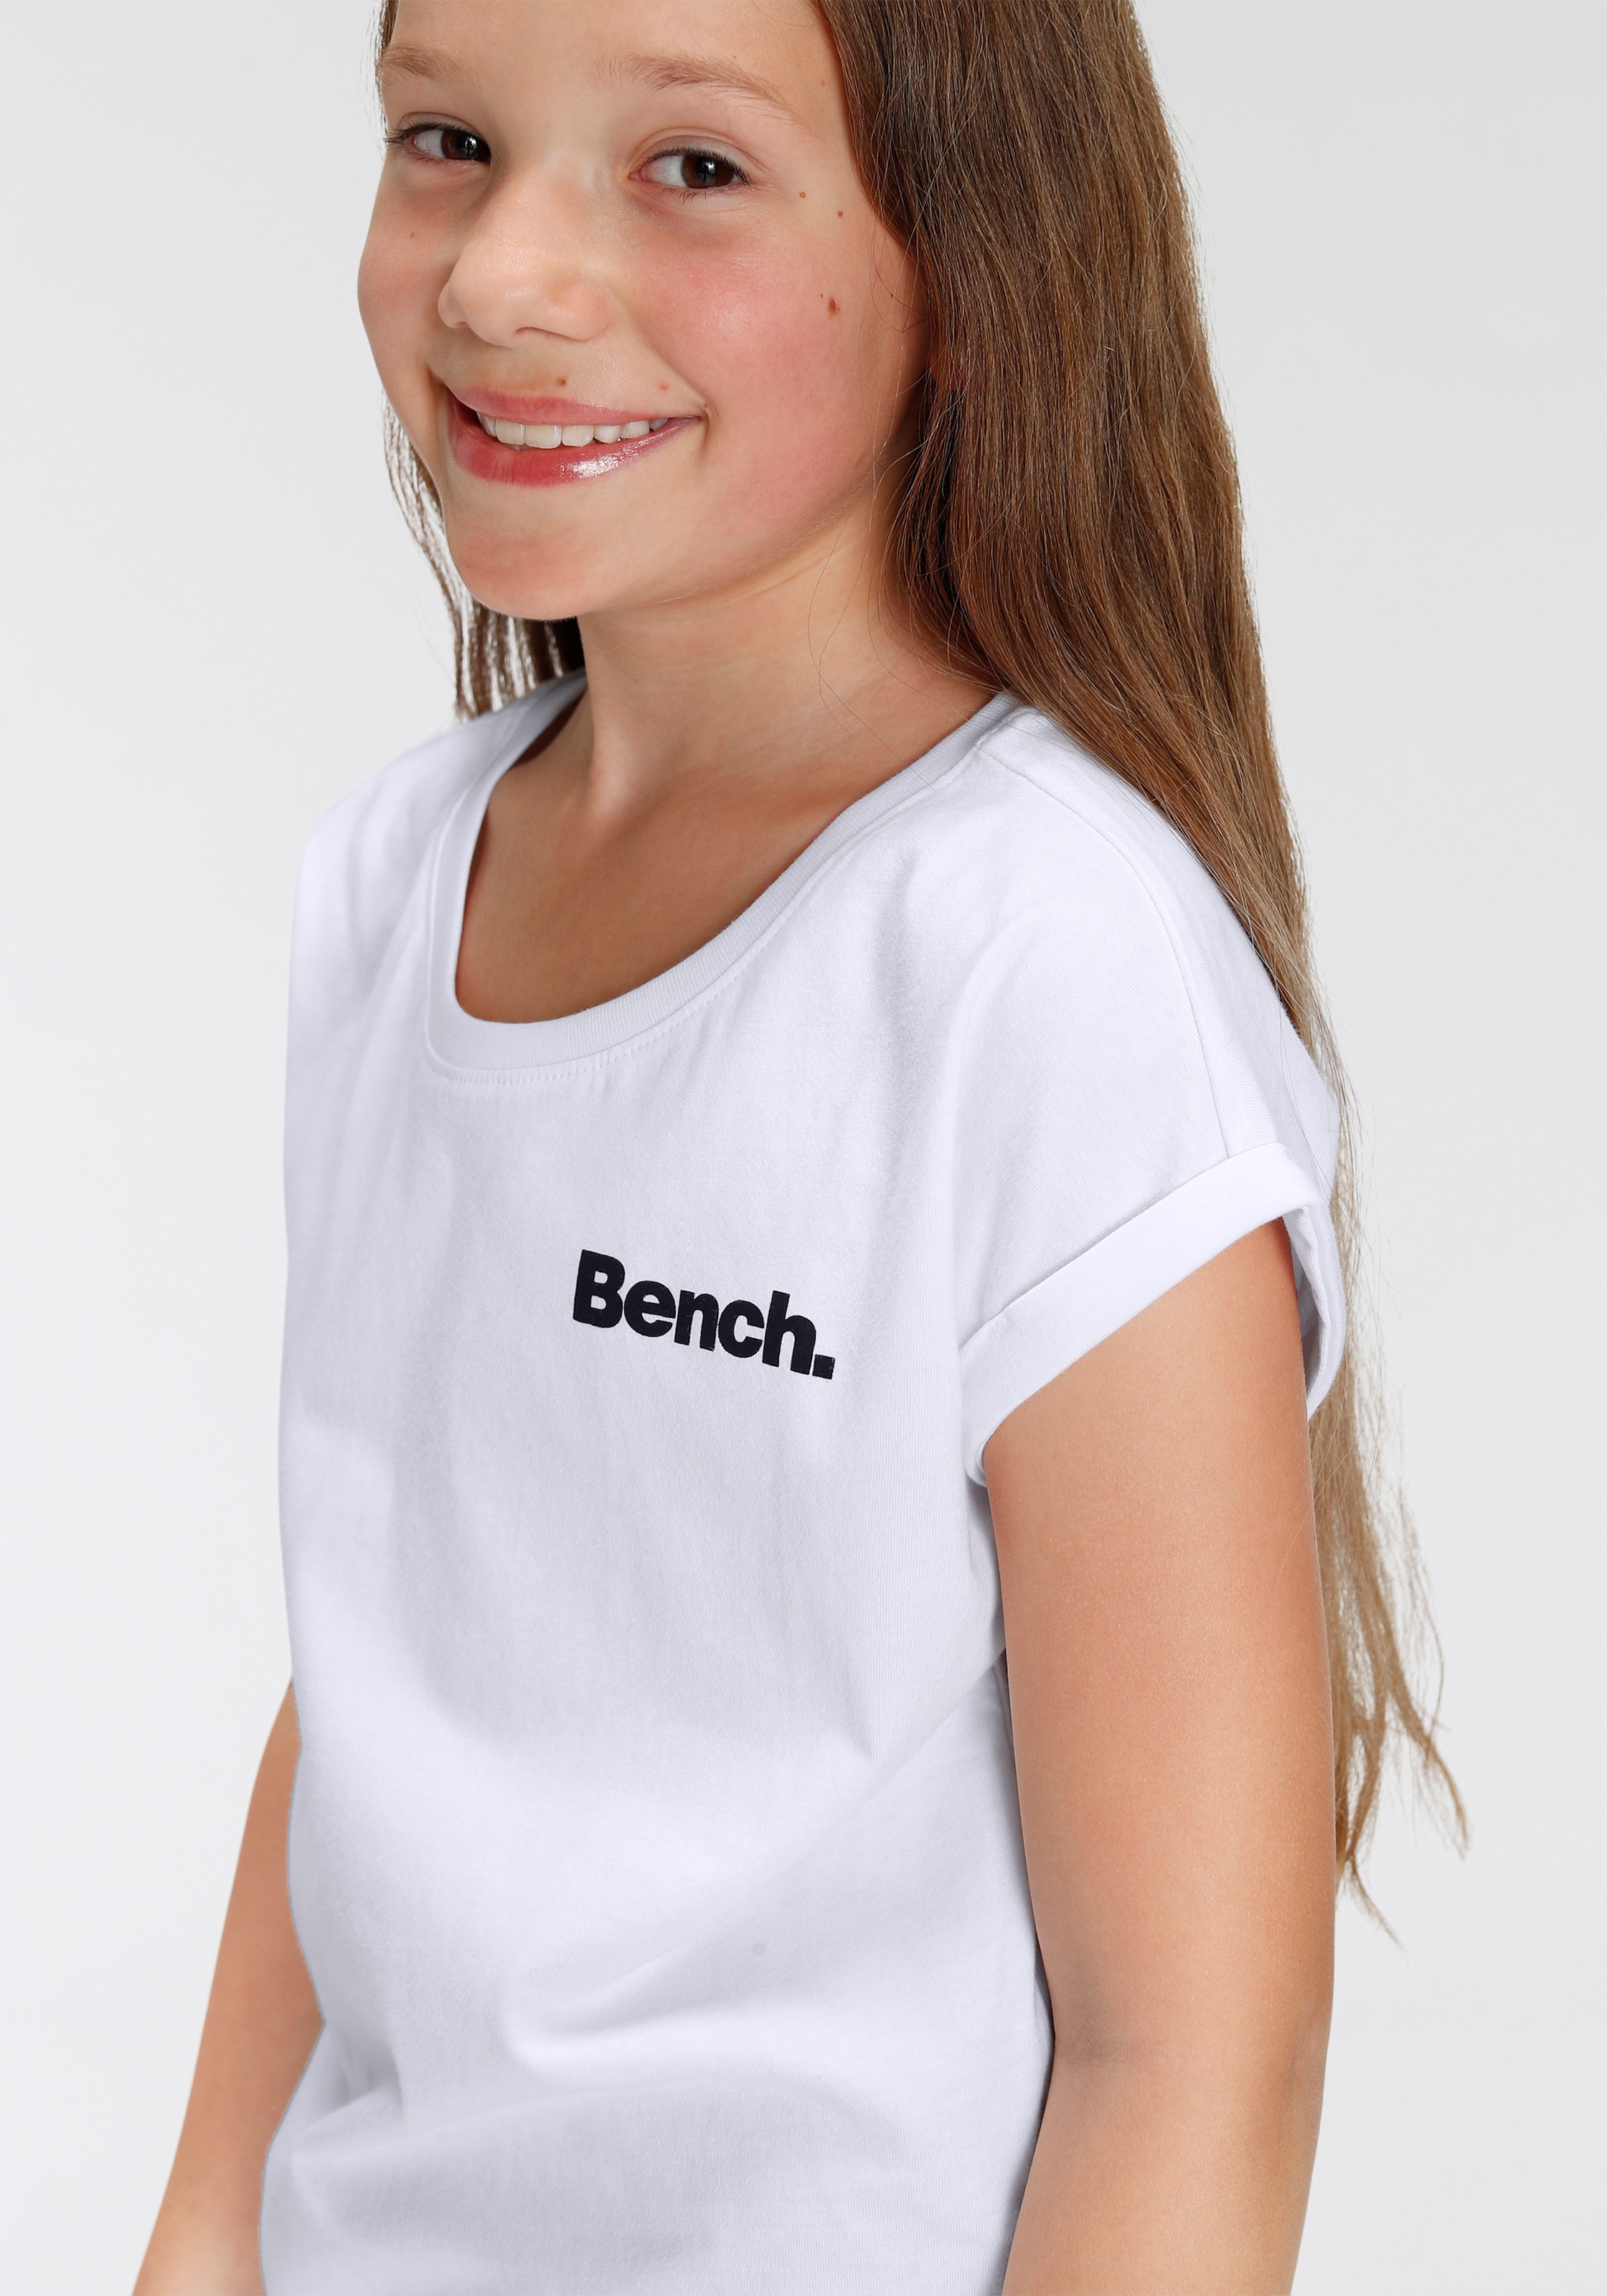 Bench. T-Shirt, bei mit ♕ Fotodruck